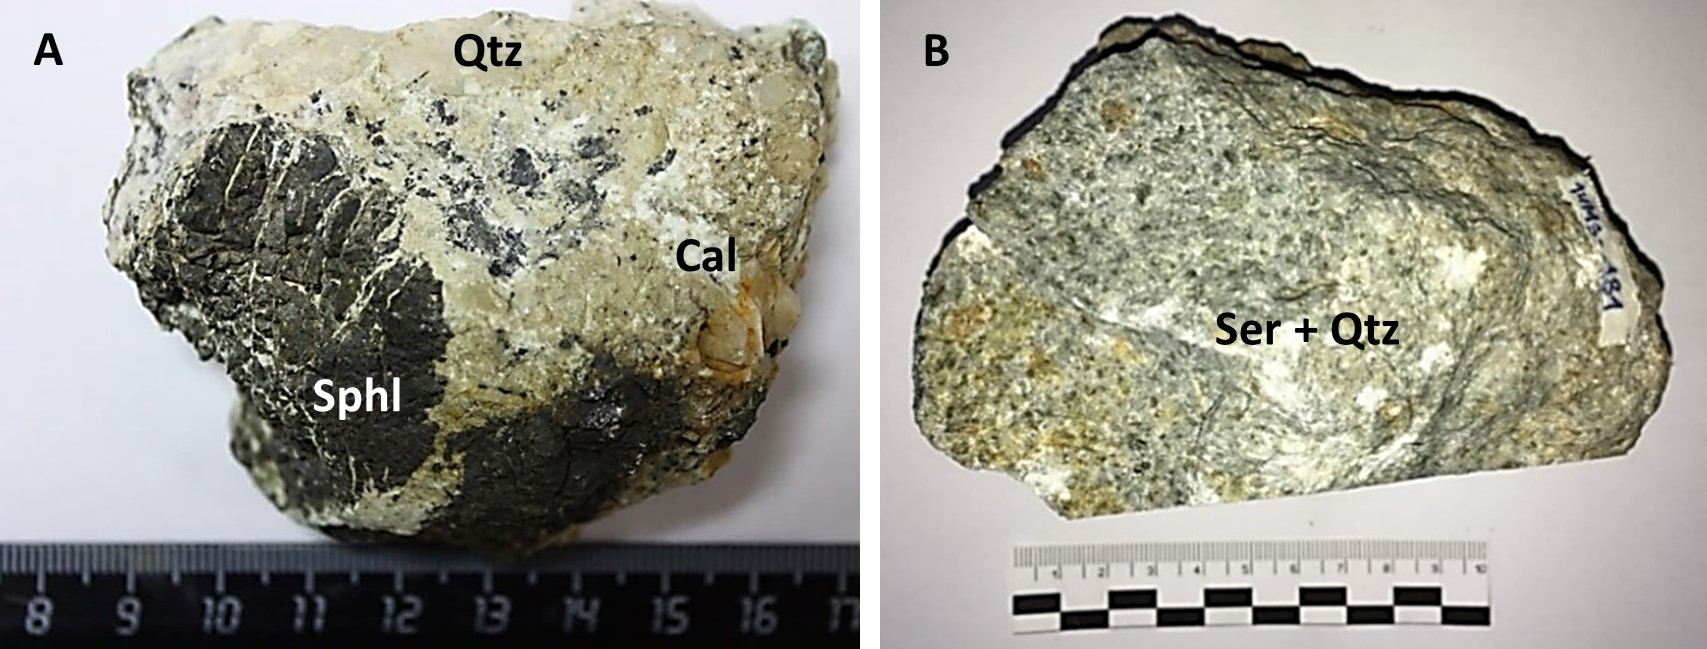 A) Agregado redondeado de esfalerita con cuarzo y microgrietas de calcita
con precipitación tardía. Descripción. SphI - esfalerita; Qtz - cuarzo; Cal - calcita.
B) Muestra de metasomatita (roca de caja) con una composición cuarzo-sericita.